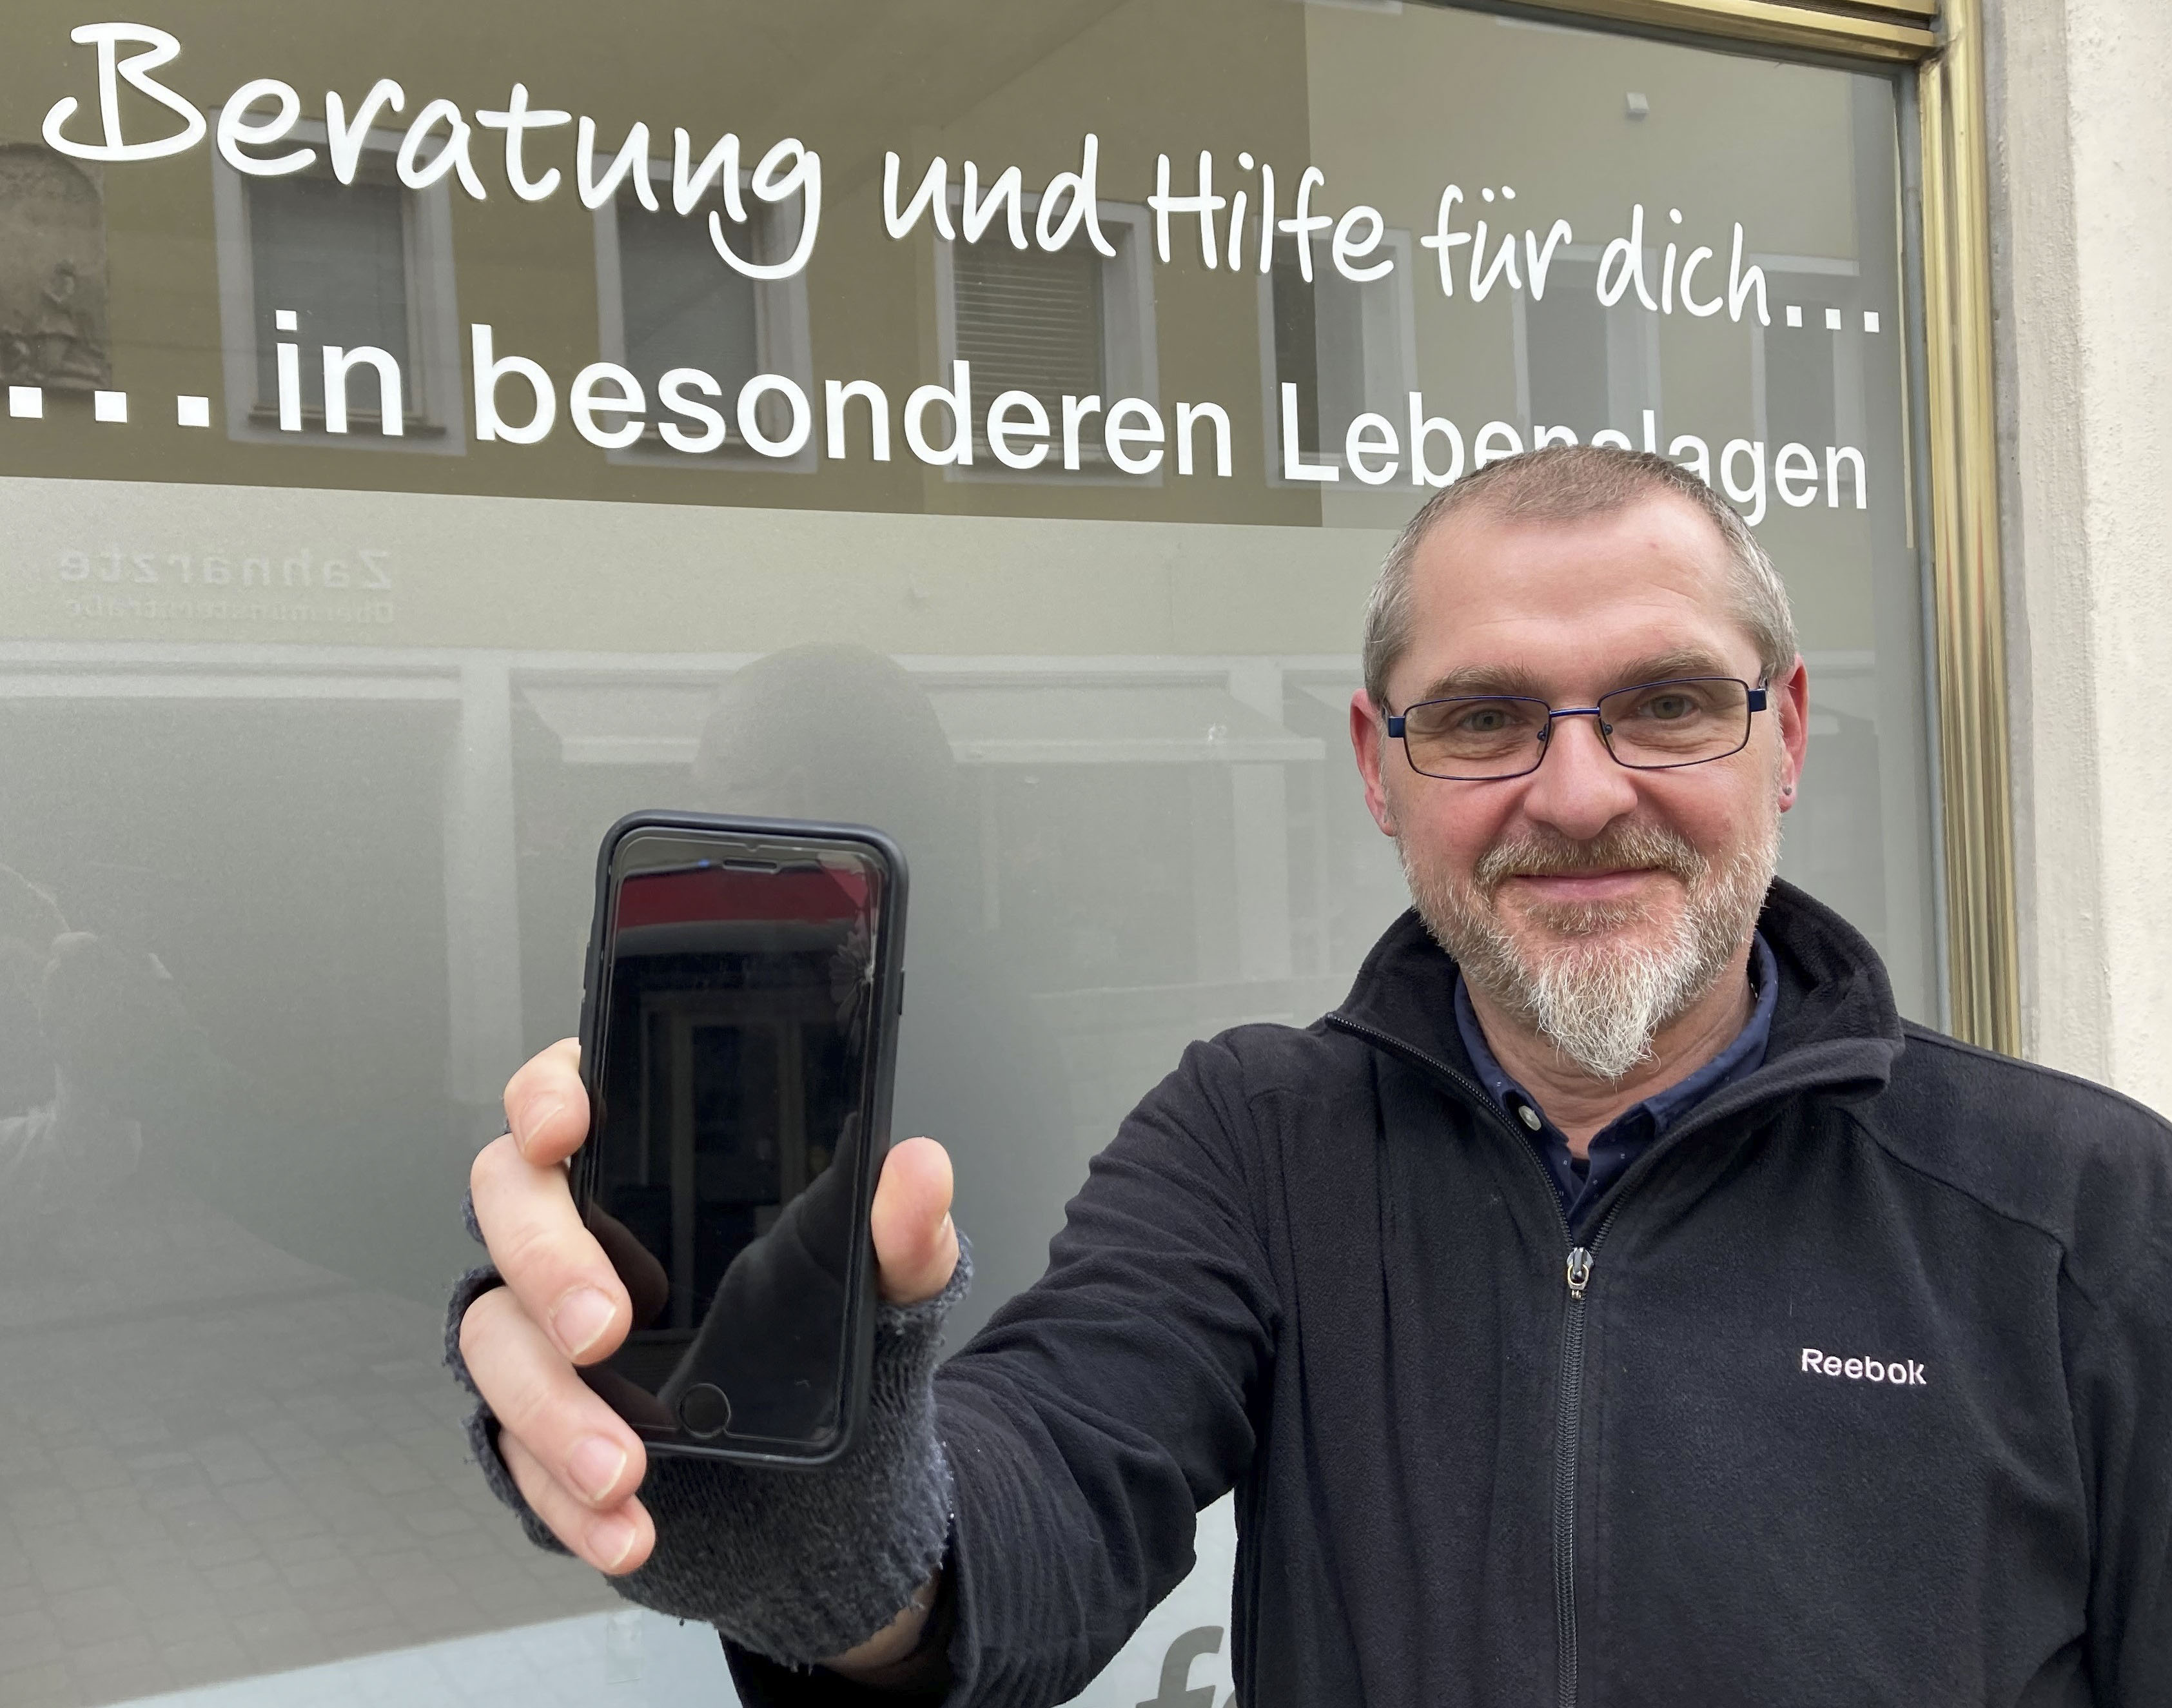 Christian Hierold, Caritas-Fachreferent für besondere Lebenslagen, nimmt gebrauchte Smartphones entgegen und gibt sie an Obdachlose weiter. Foto: Schophoff/Caritas Regensburg